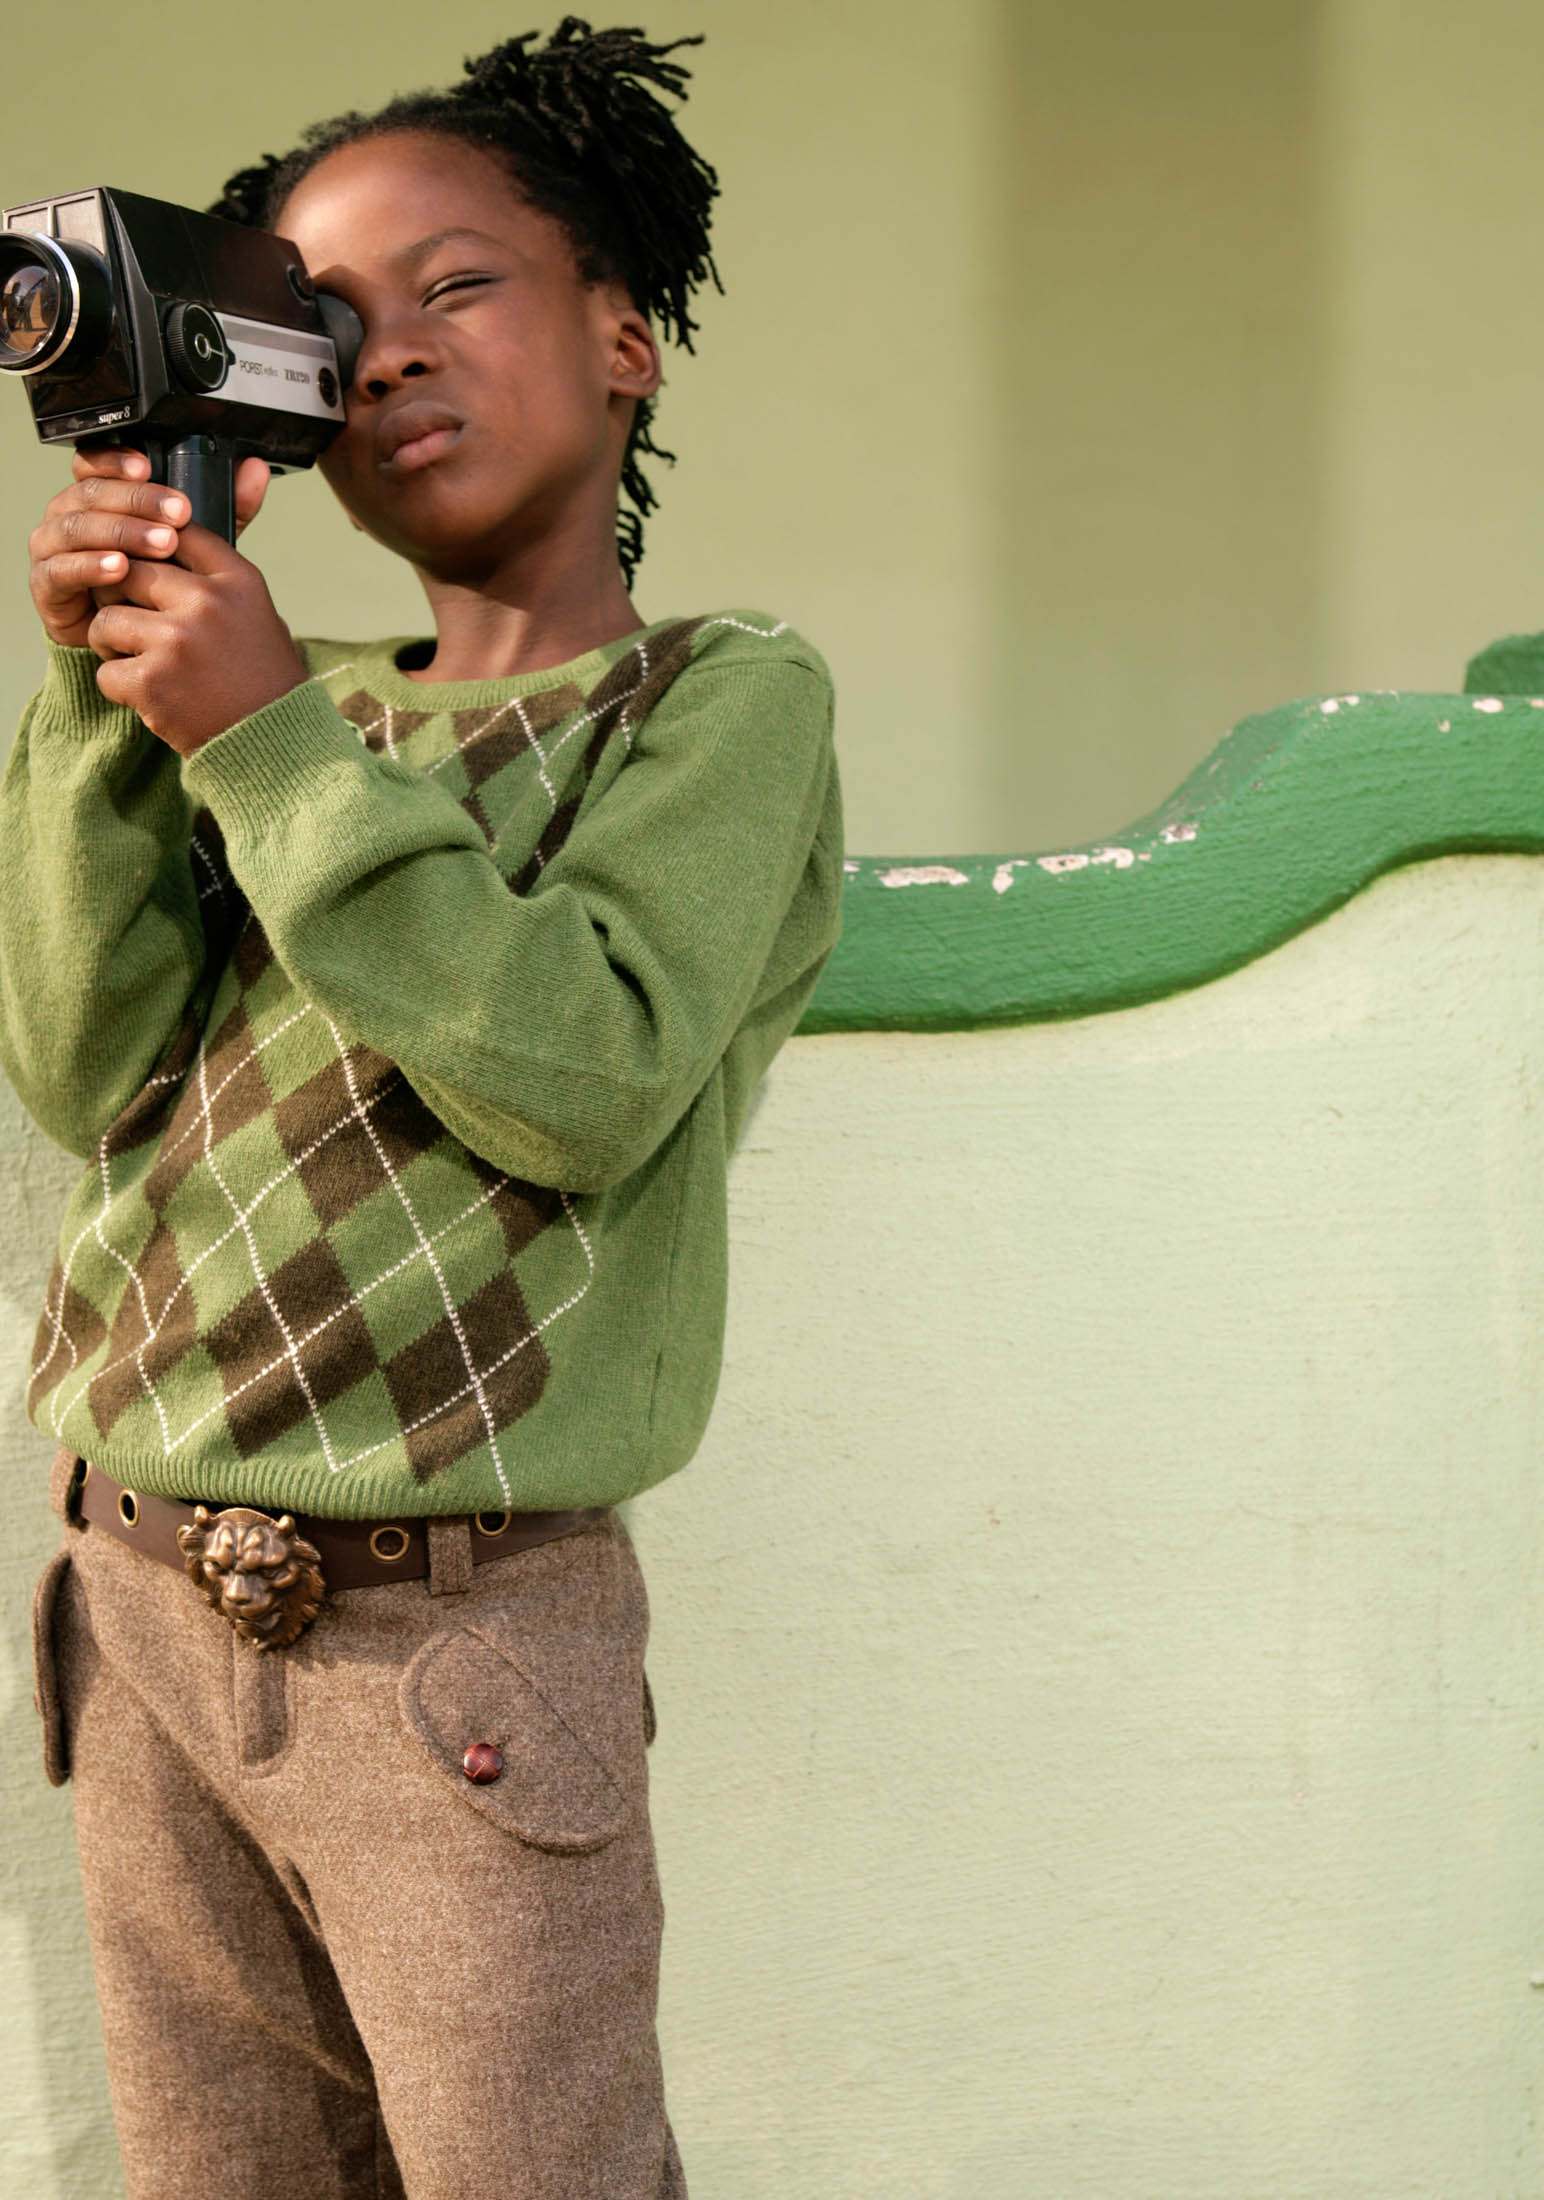 Ein kleines Kind mit geflochtenen Haaren konzentriert sich intensiv darauf, mit einer Handkamera ein Video aufzunehmen. Es trägt einen grün-braunen Pullover und braune Hosen und steht vor einer grünen Wand. © Fotografie Tomas Rodriguez